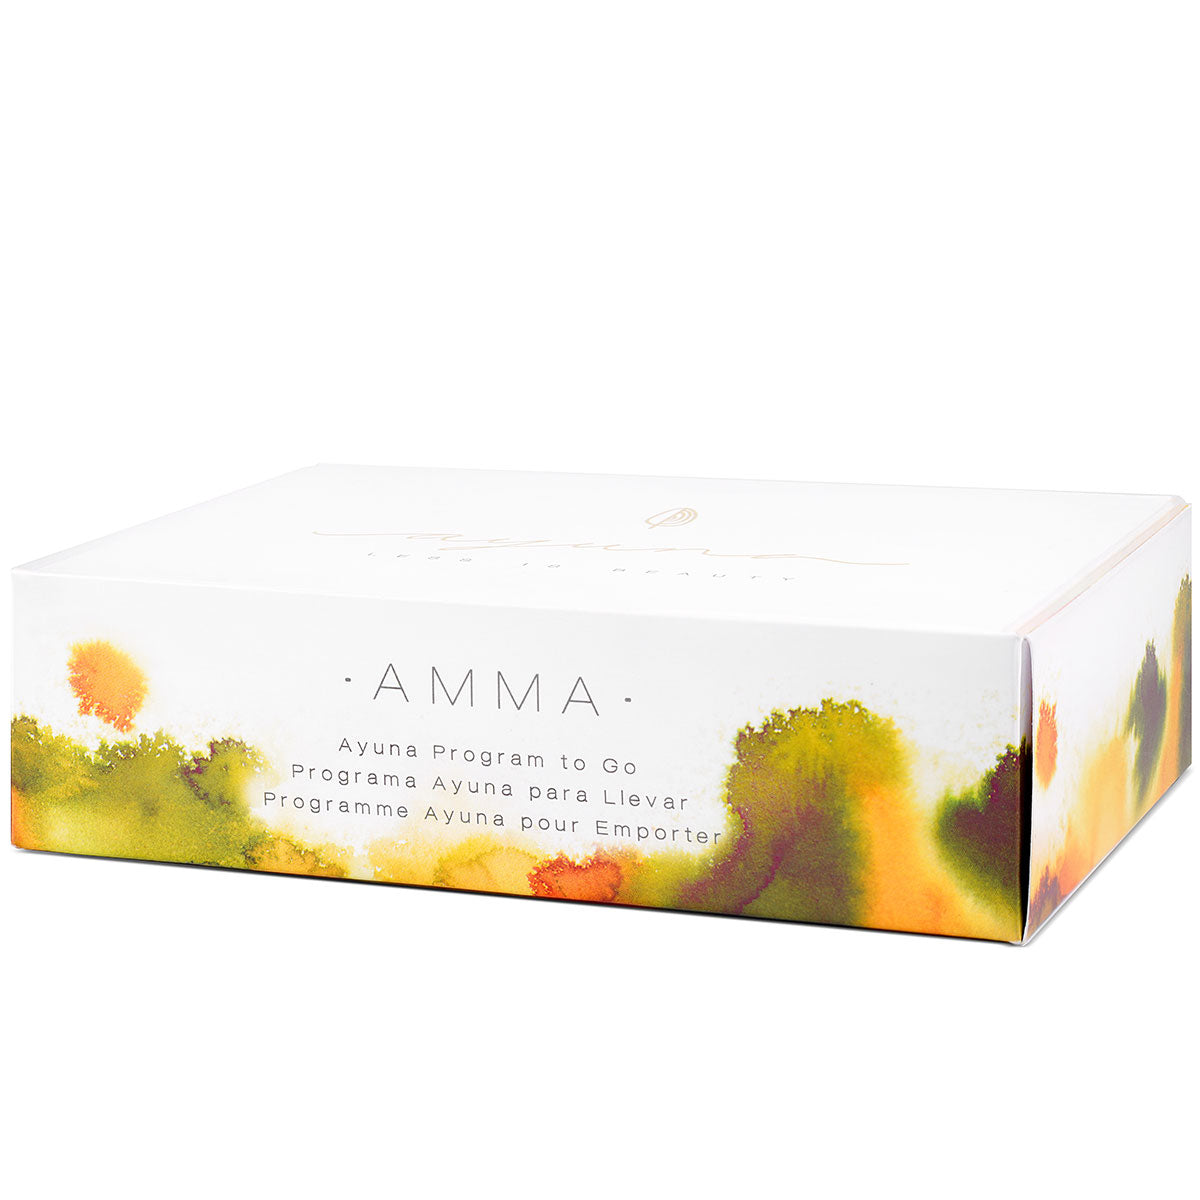 Ensemble Ayuna Programme to Go Light Amma : savon, crème, essence, après-shampooing, voile, soin du visage